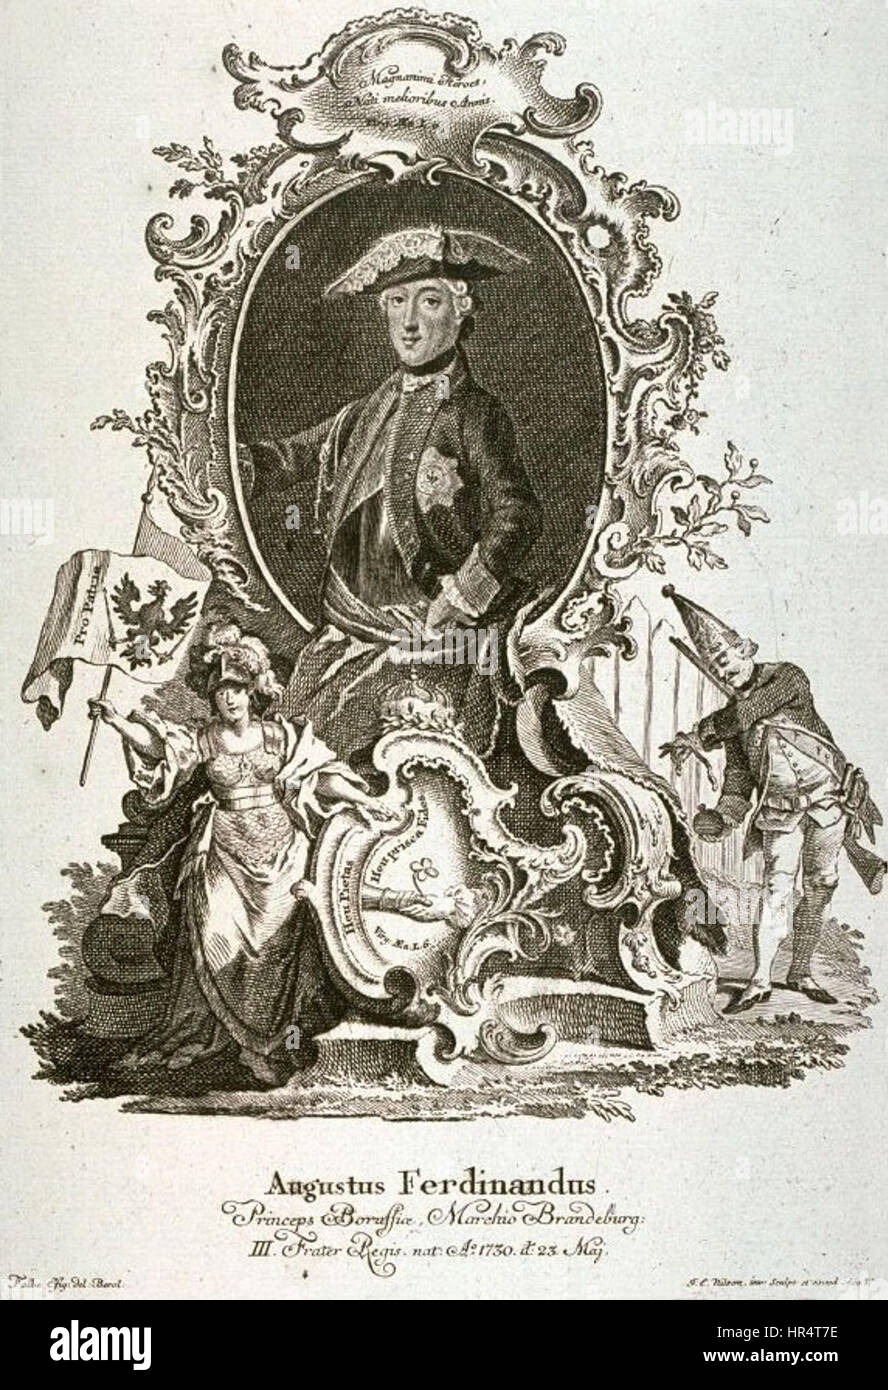 Porträt von August Ferdinand - Nilson aus dem 18. Jahrhundert Stockfoto